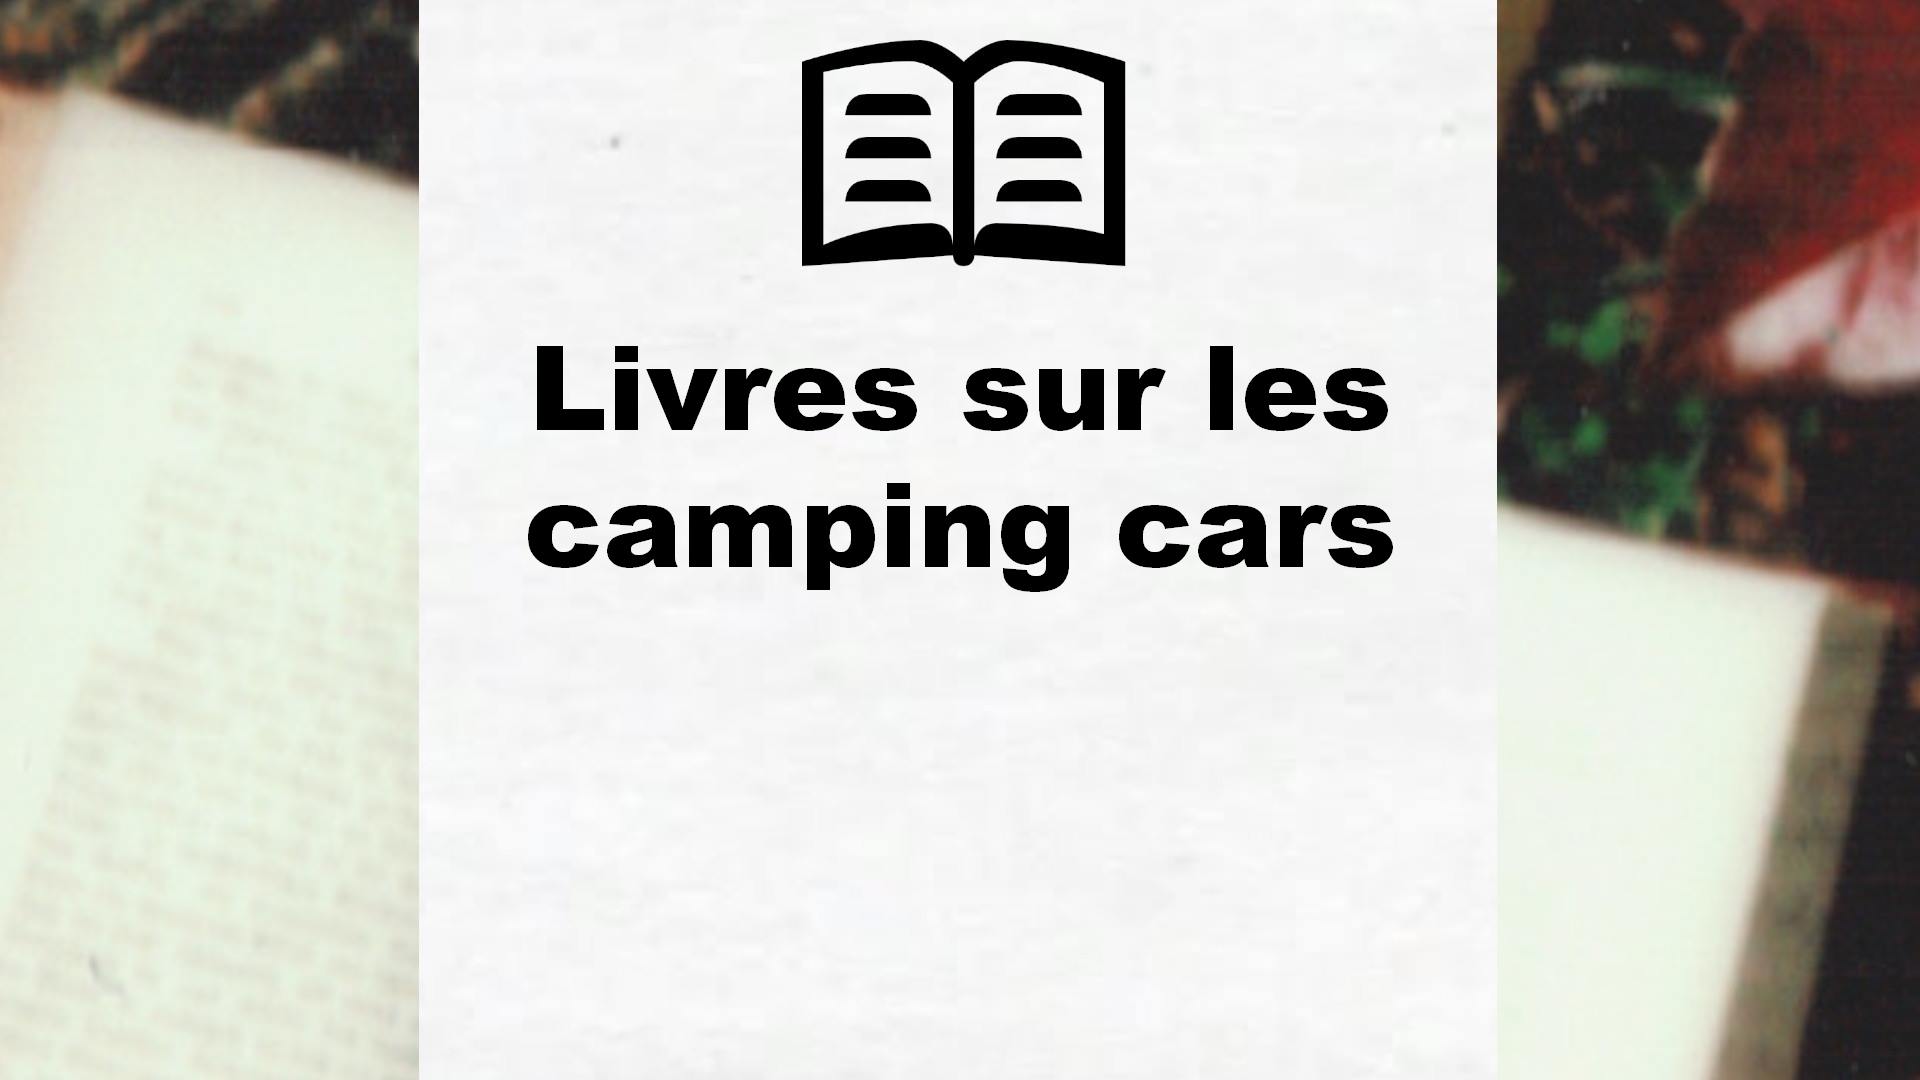 Livres sur les camping cars